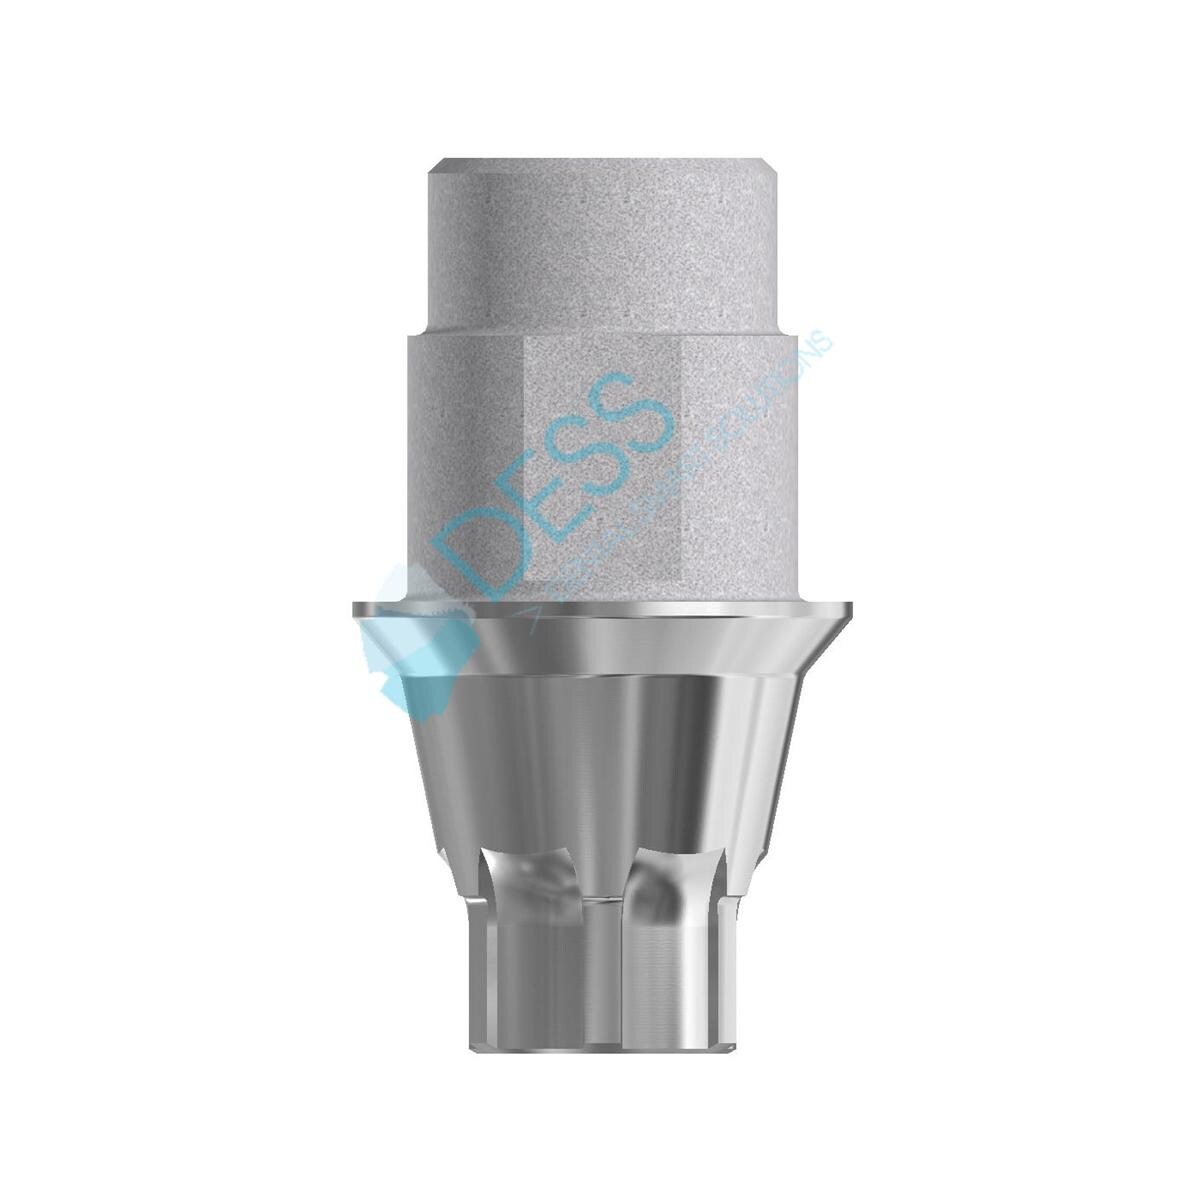 Interface titane EV 4.2mm, HG 3.0mm anti-rotationnelle sur implant, vis incluse pour ASTRA TECH IMPLANT SYSTEM? EV 16360 DESS